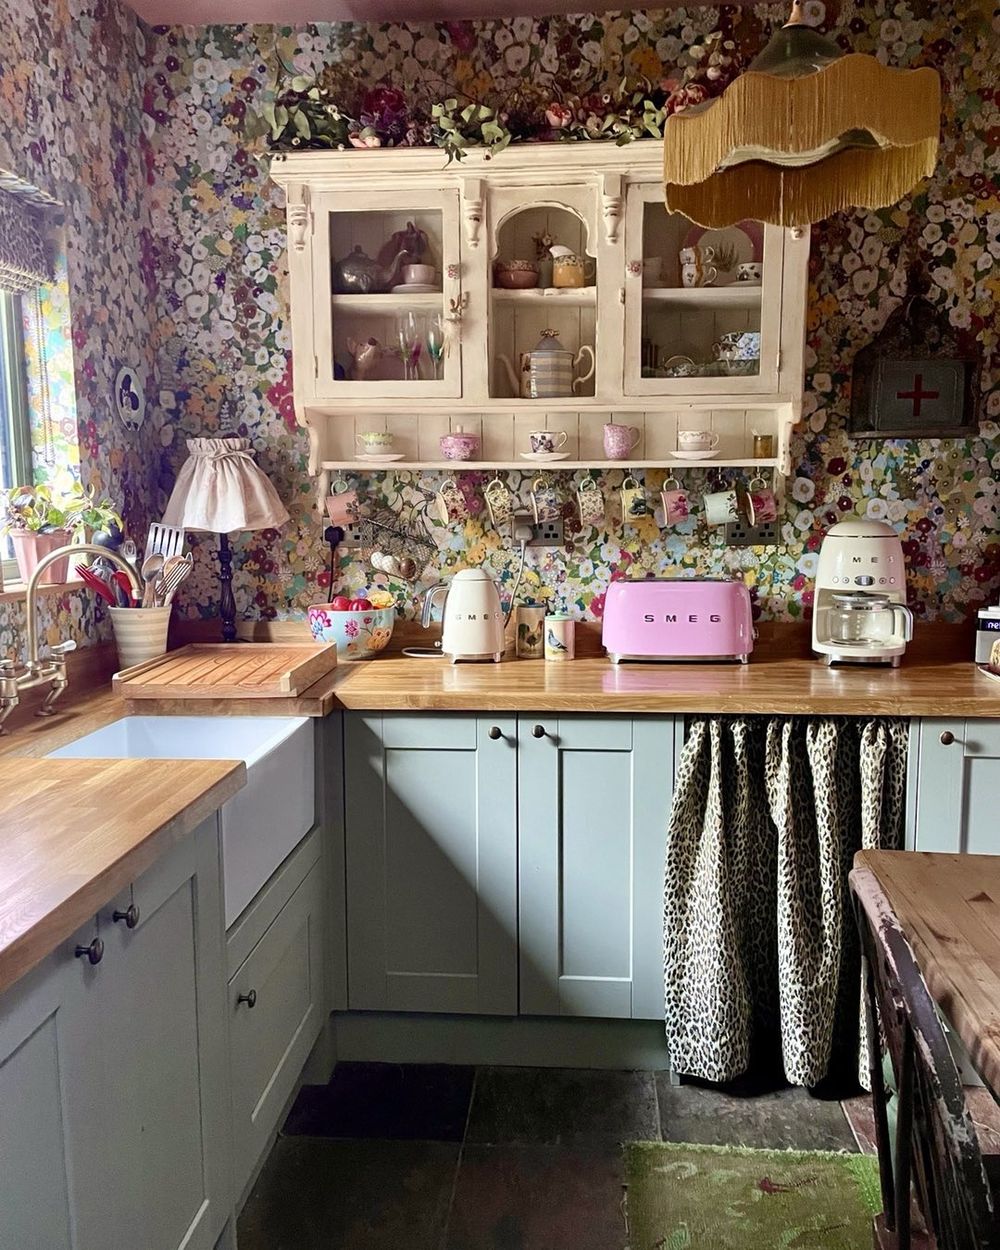 Cottage kitchen decor Smeg appliances floral wallpaper angelvintageinteriors